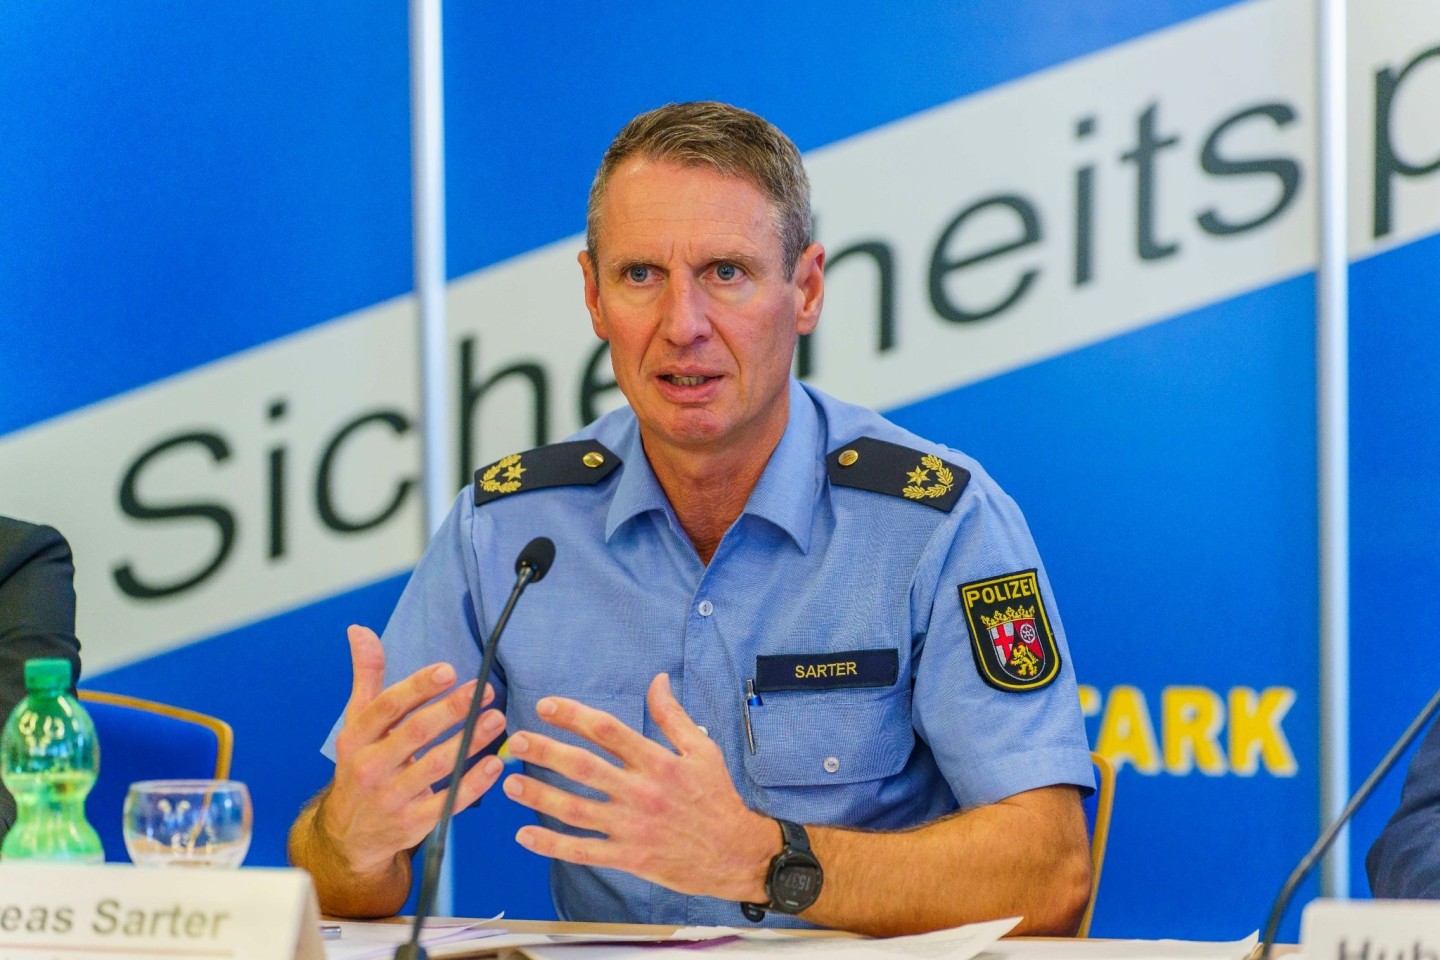 Andreas Sarter, Polizeivizepräsident am Polizeipräsidium Rheinpfalz, auf der Pressekonferenz: «Uns war bekannt, mit welchem Menschen wir zu tun haben.»